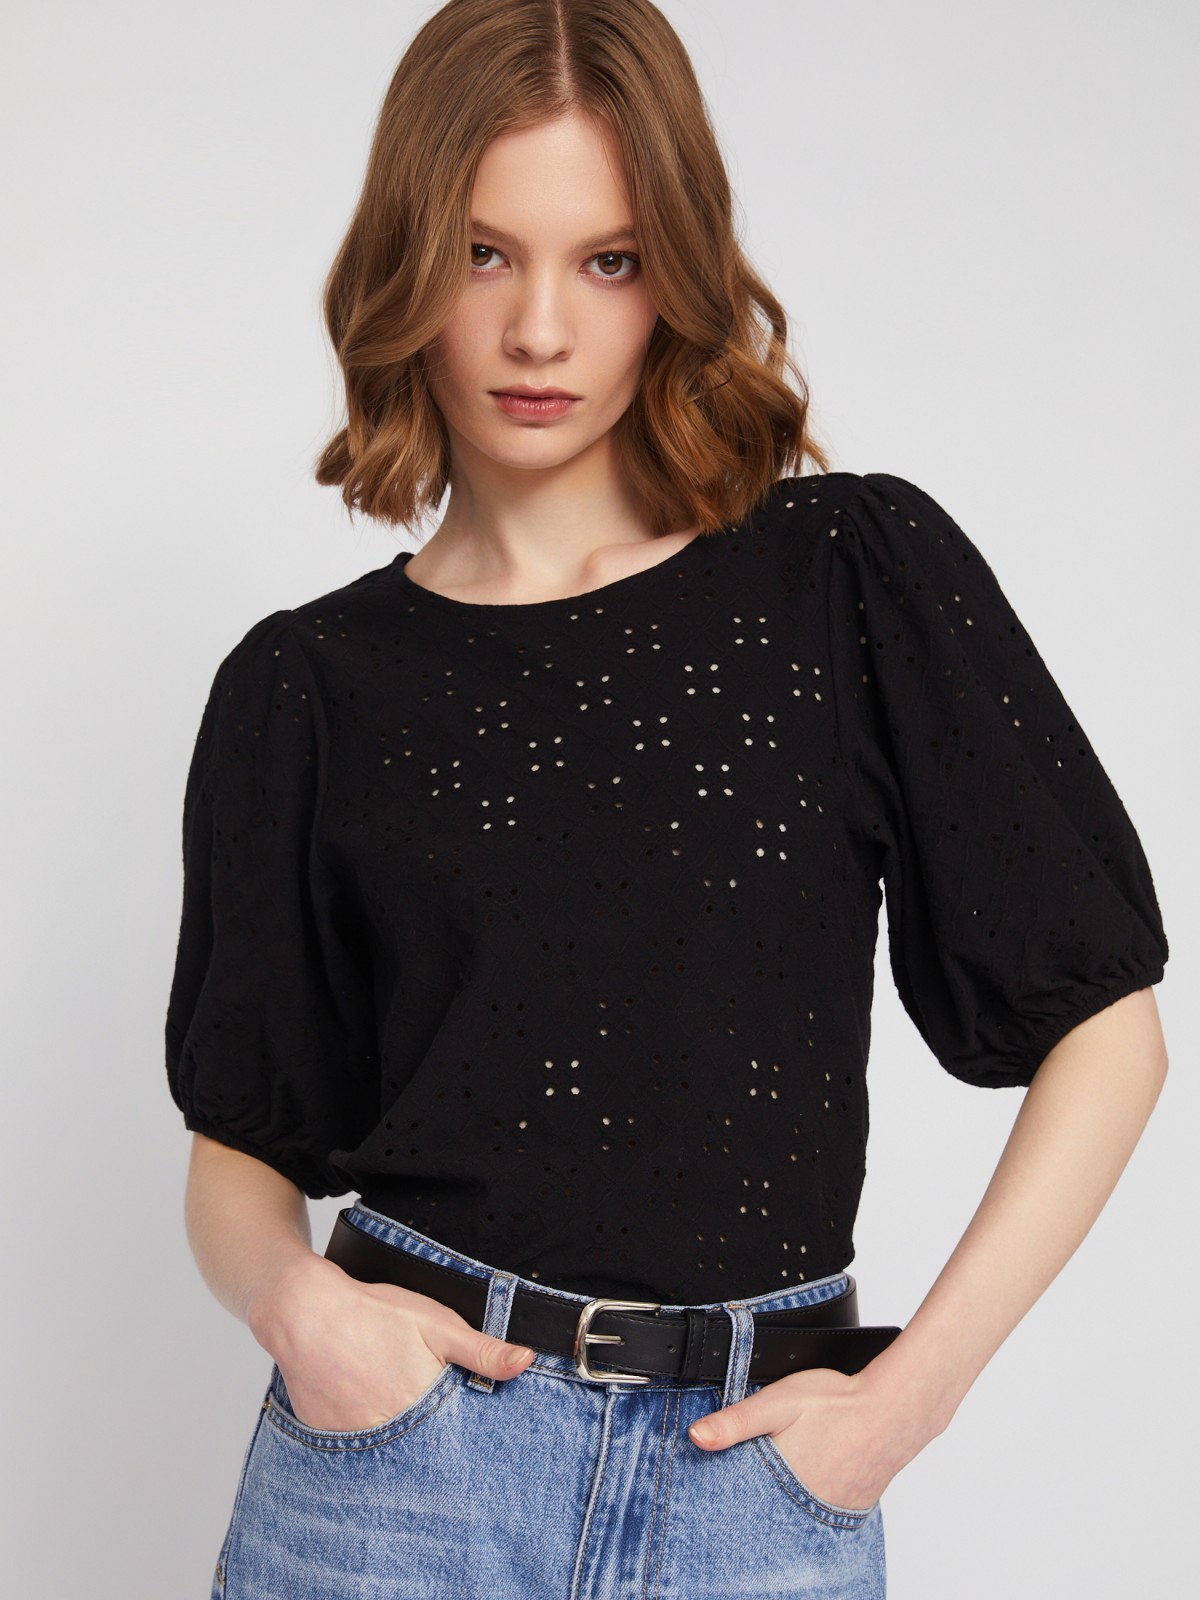 Топ-блузка из хлопка с пышным рукавом zolla 024133226023, цвет черный, размер M